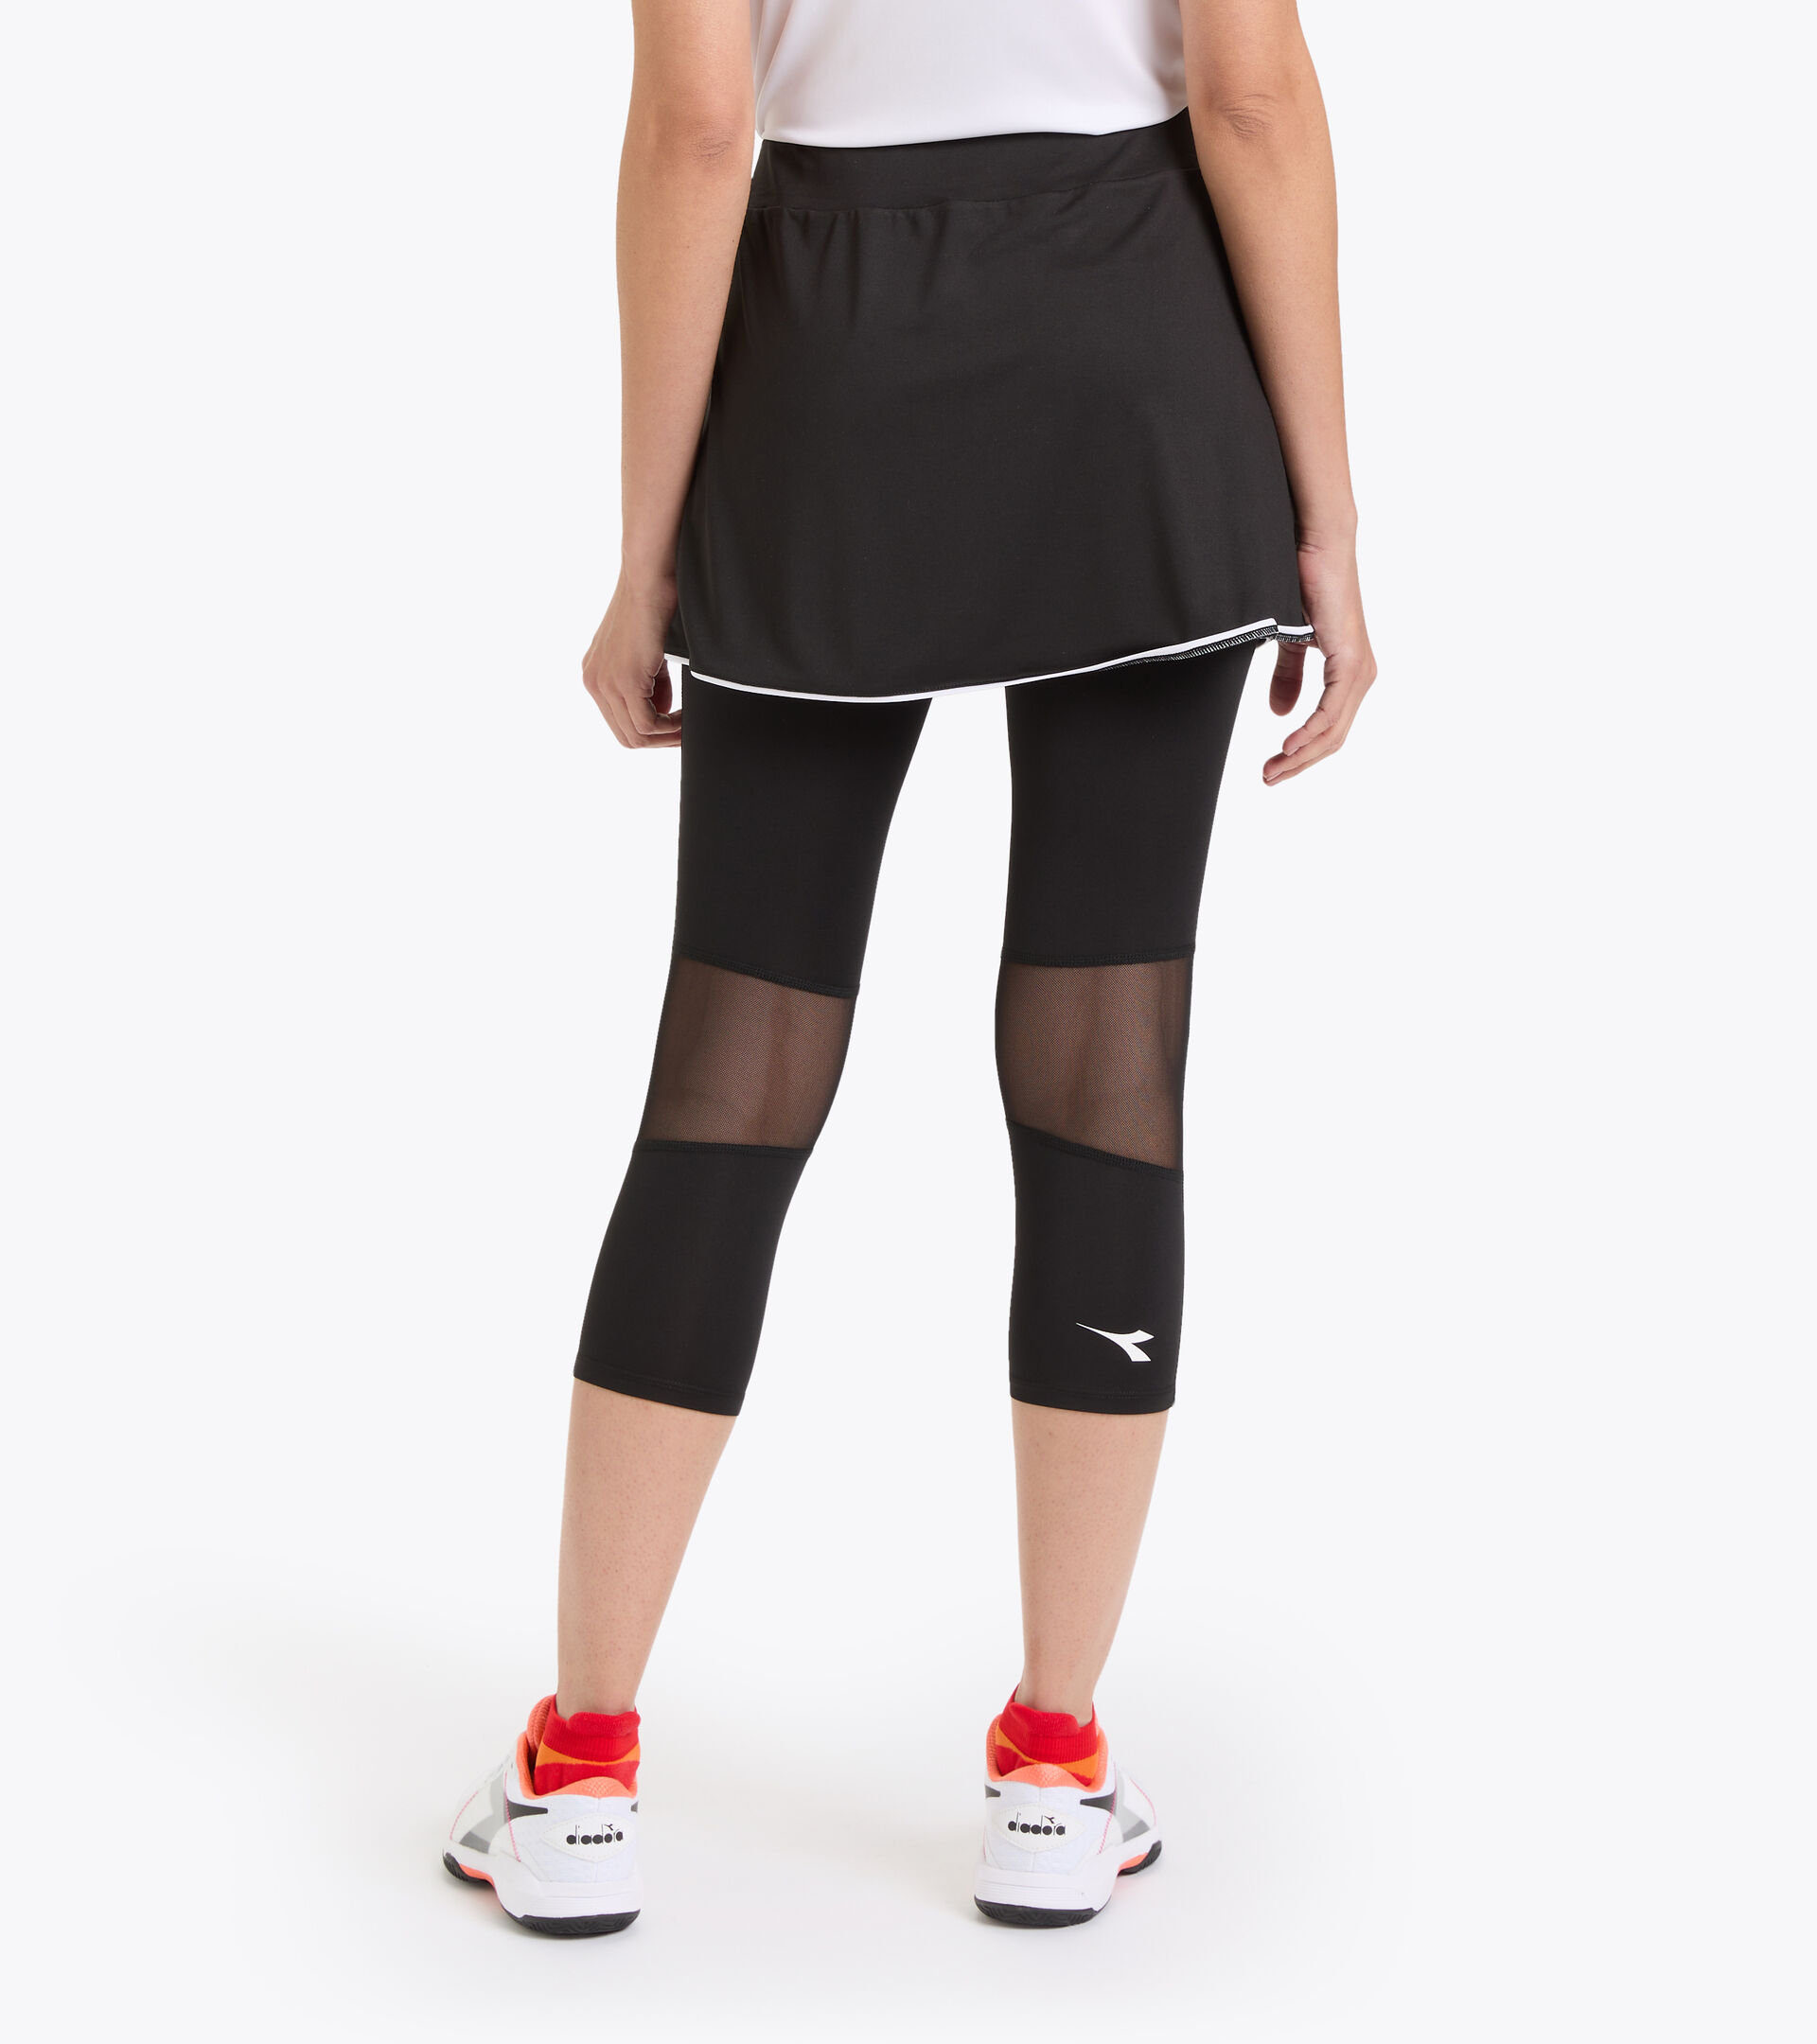 L. POWER SKIRT Polyester Online Diadora - Women US skirt Store tennis 